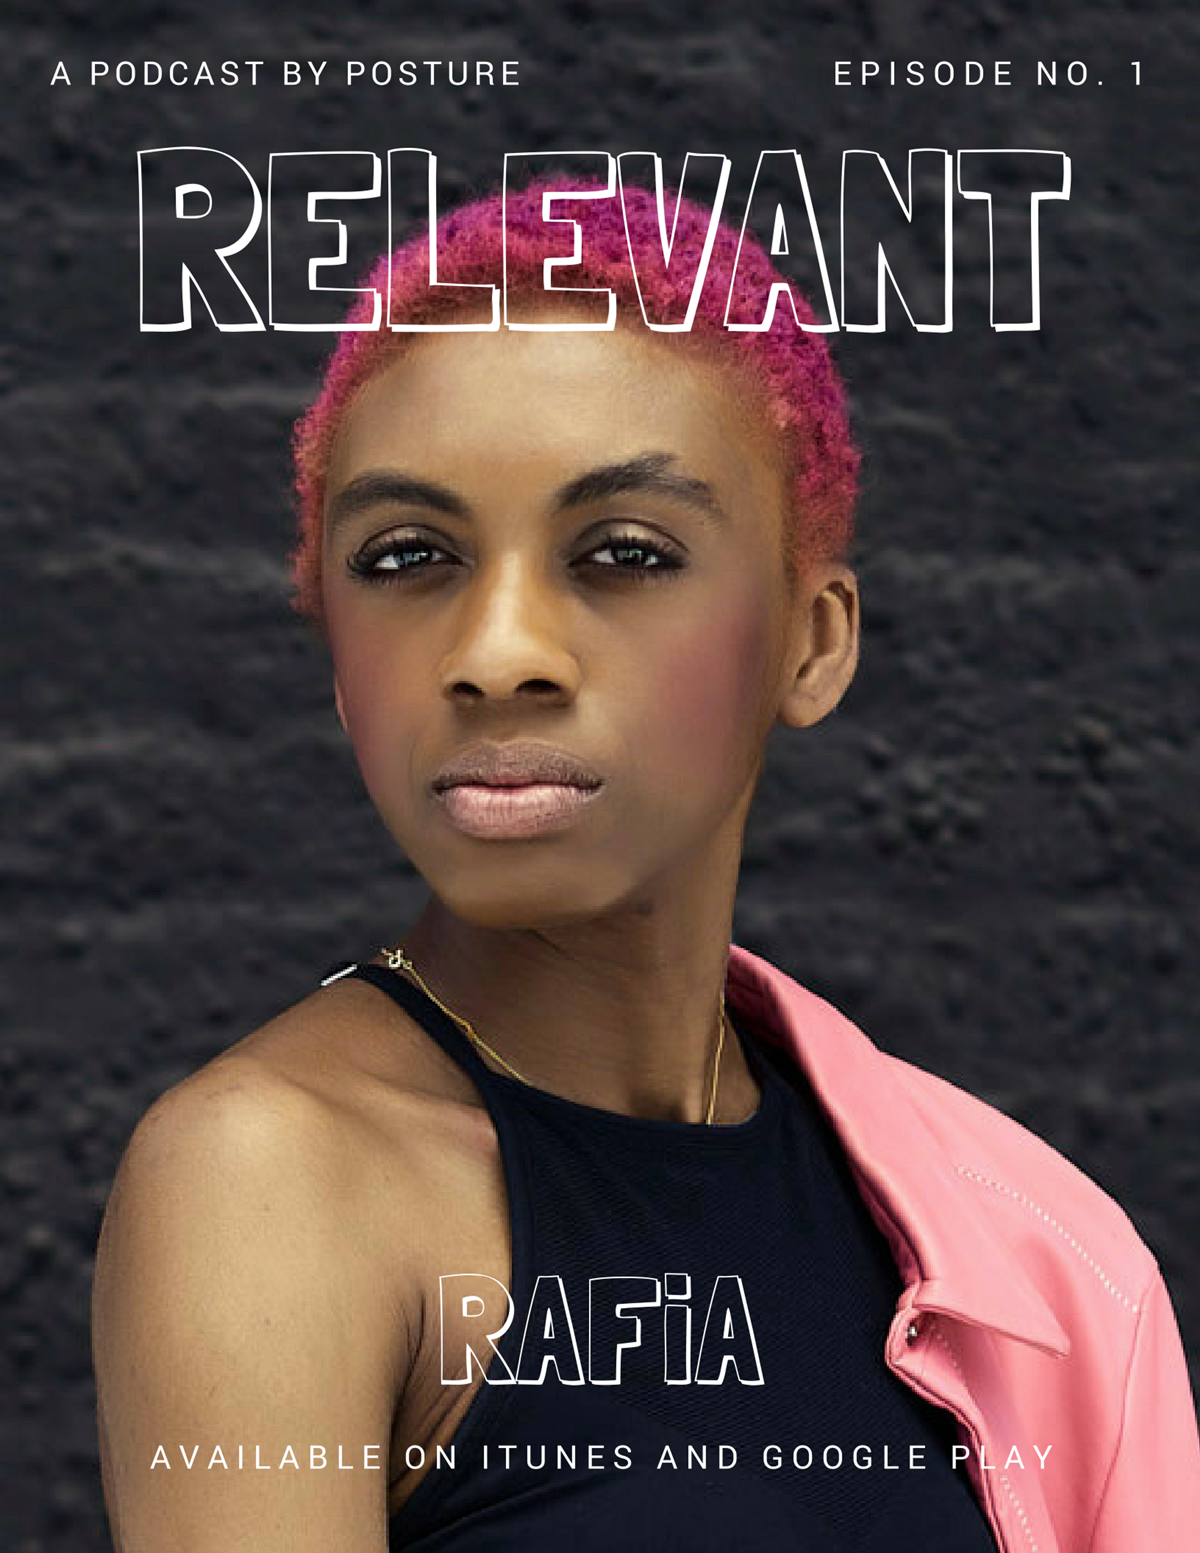 RAFiA-artist-Relevant-Podcast-Posture-Magazine